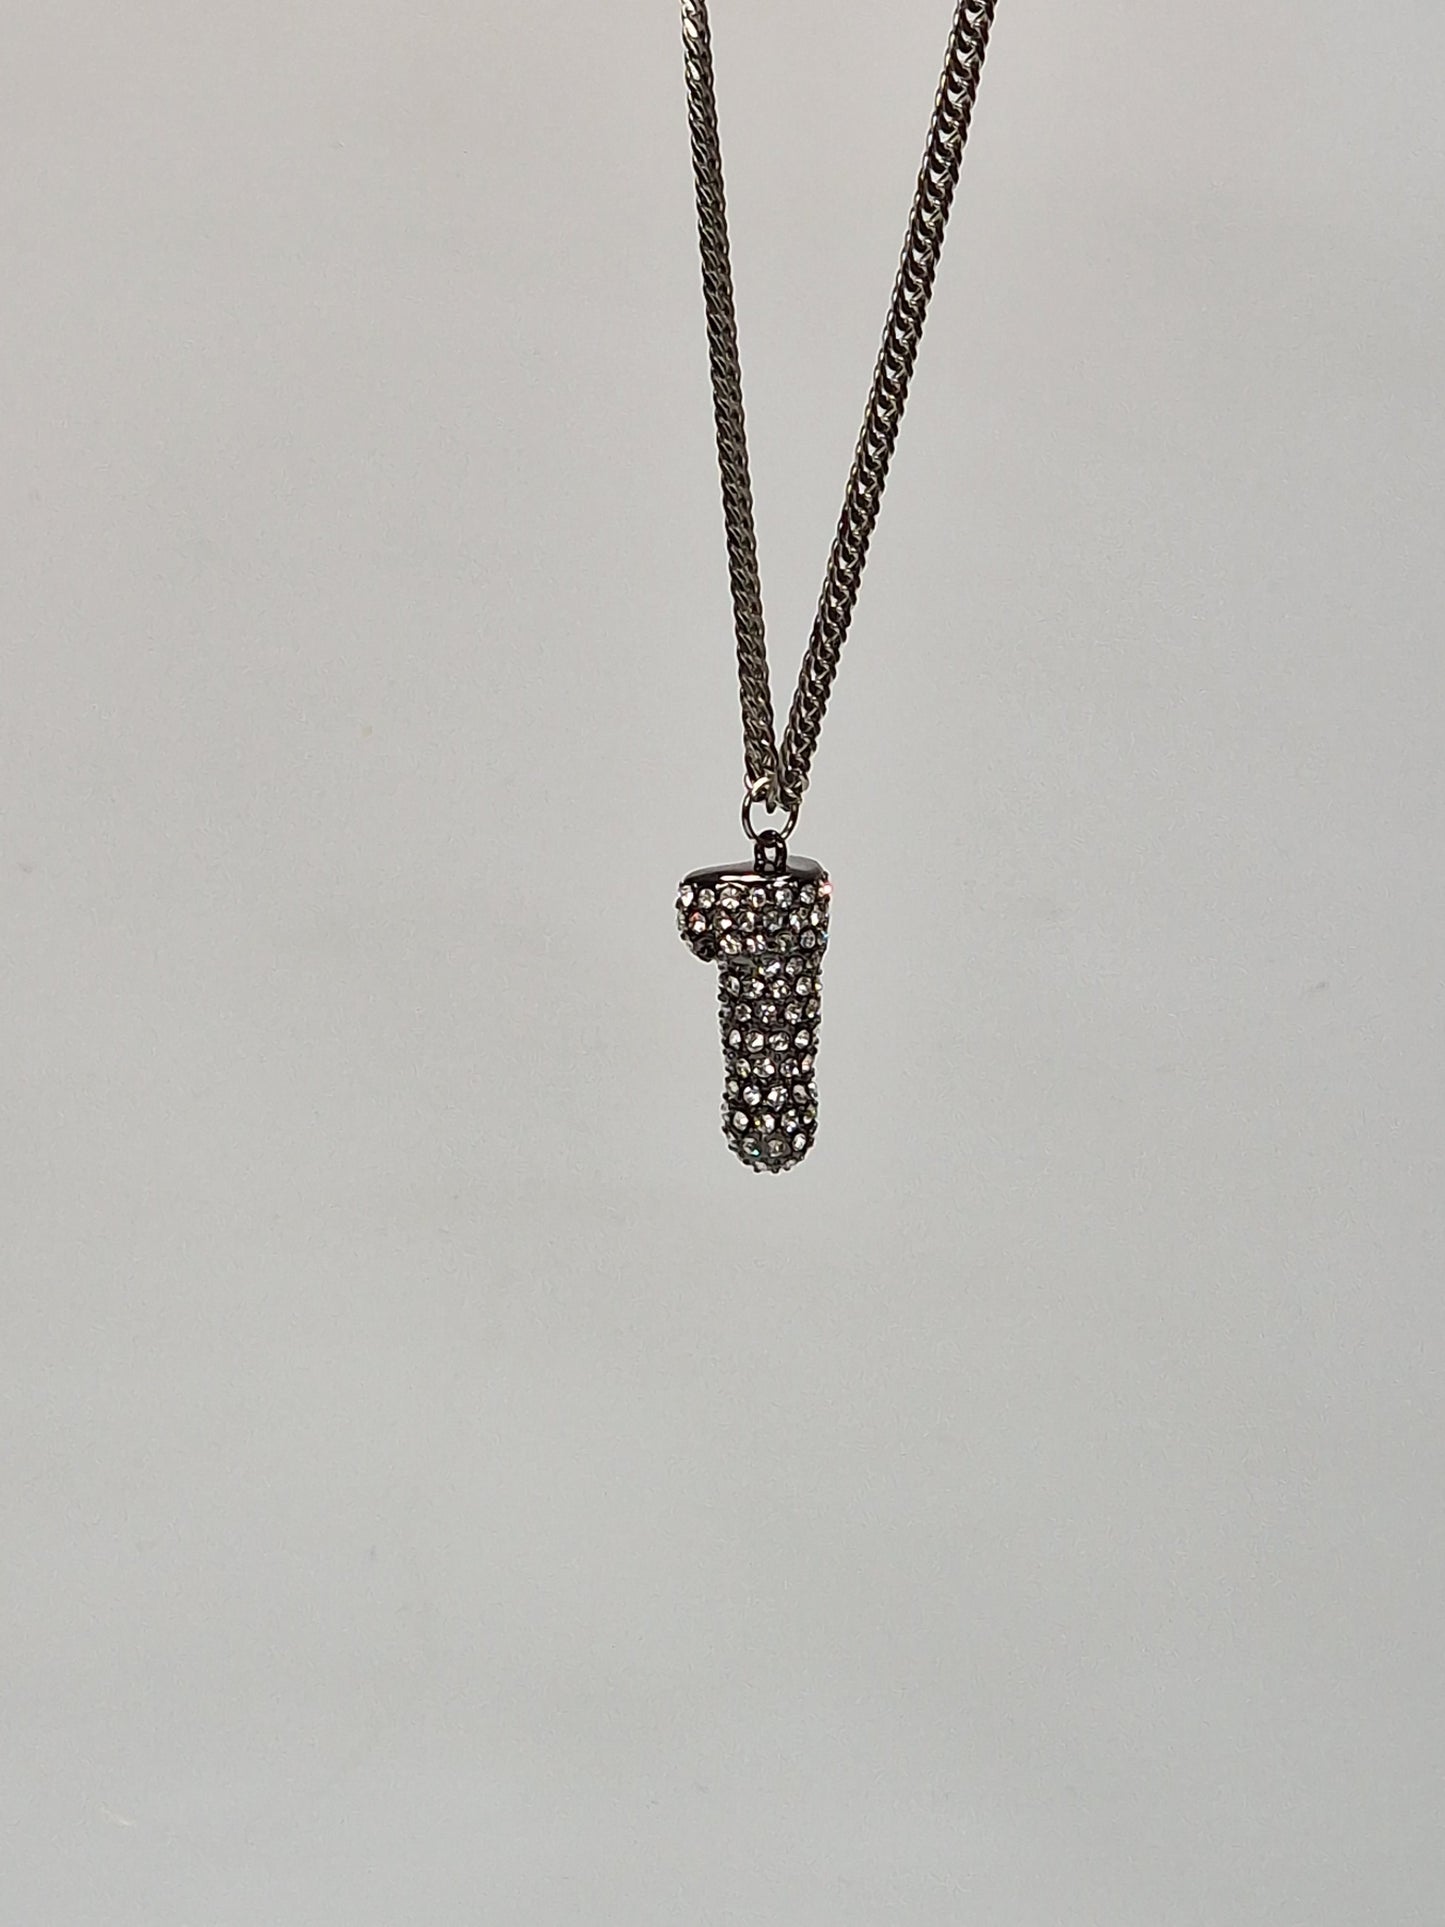 Svart metall med swarovski kristaller  - Halsband 2.5 cm hängsmycke